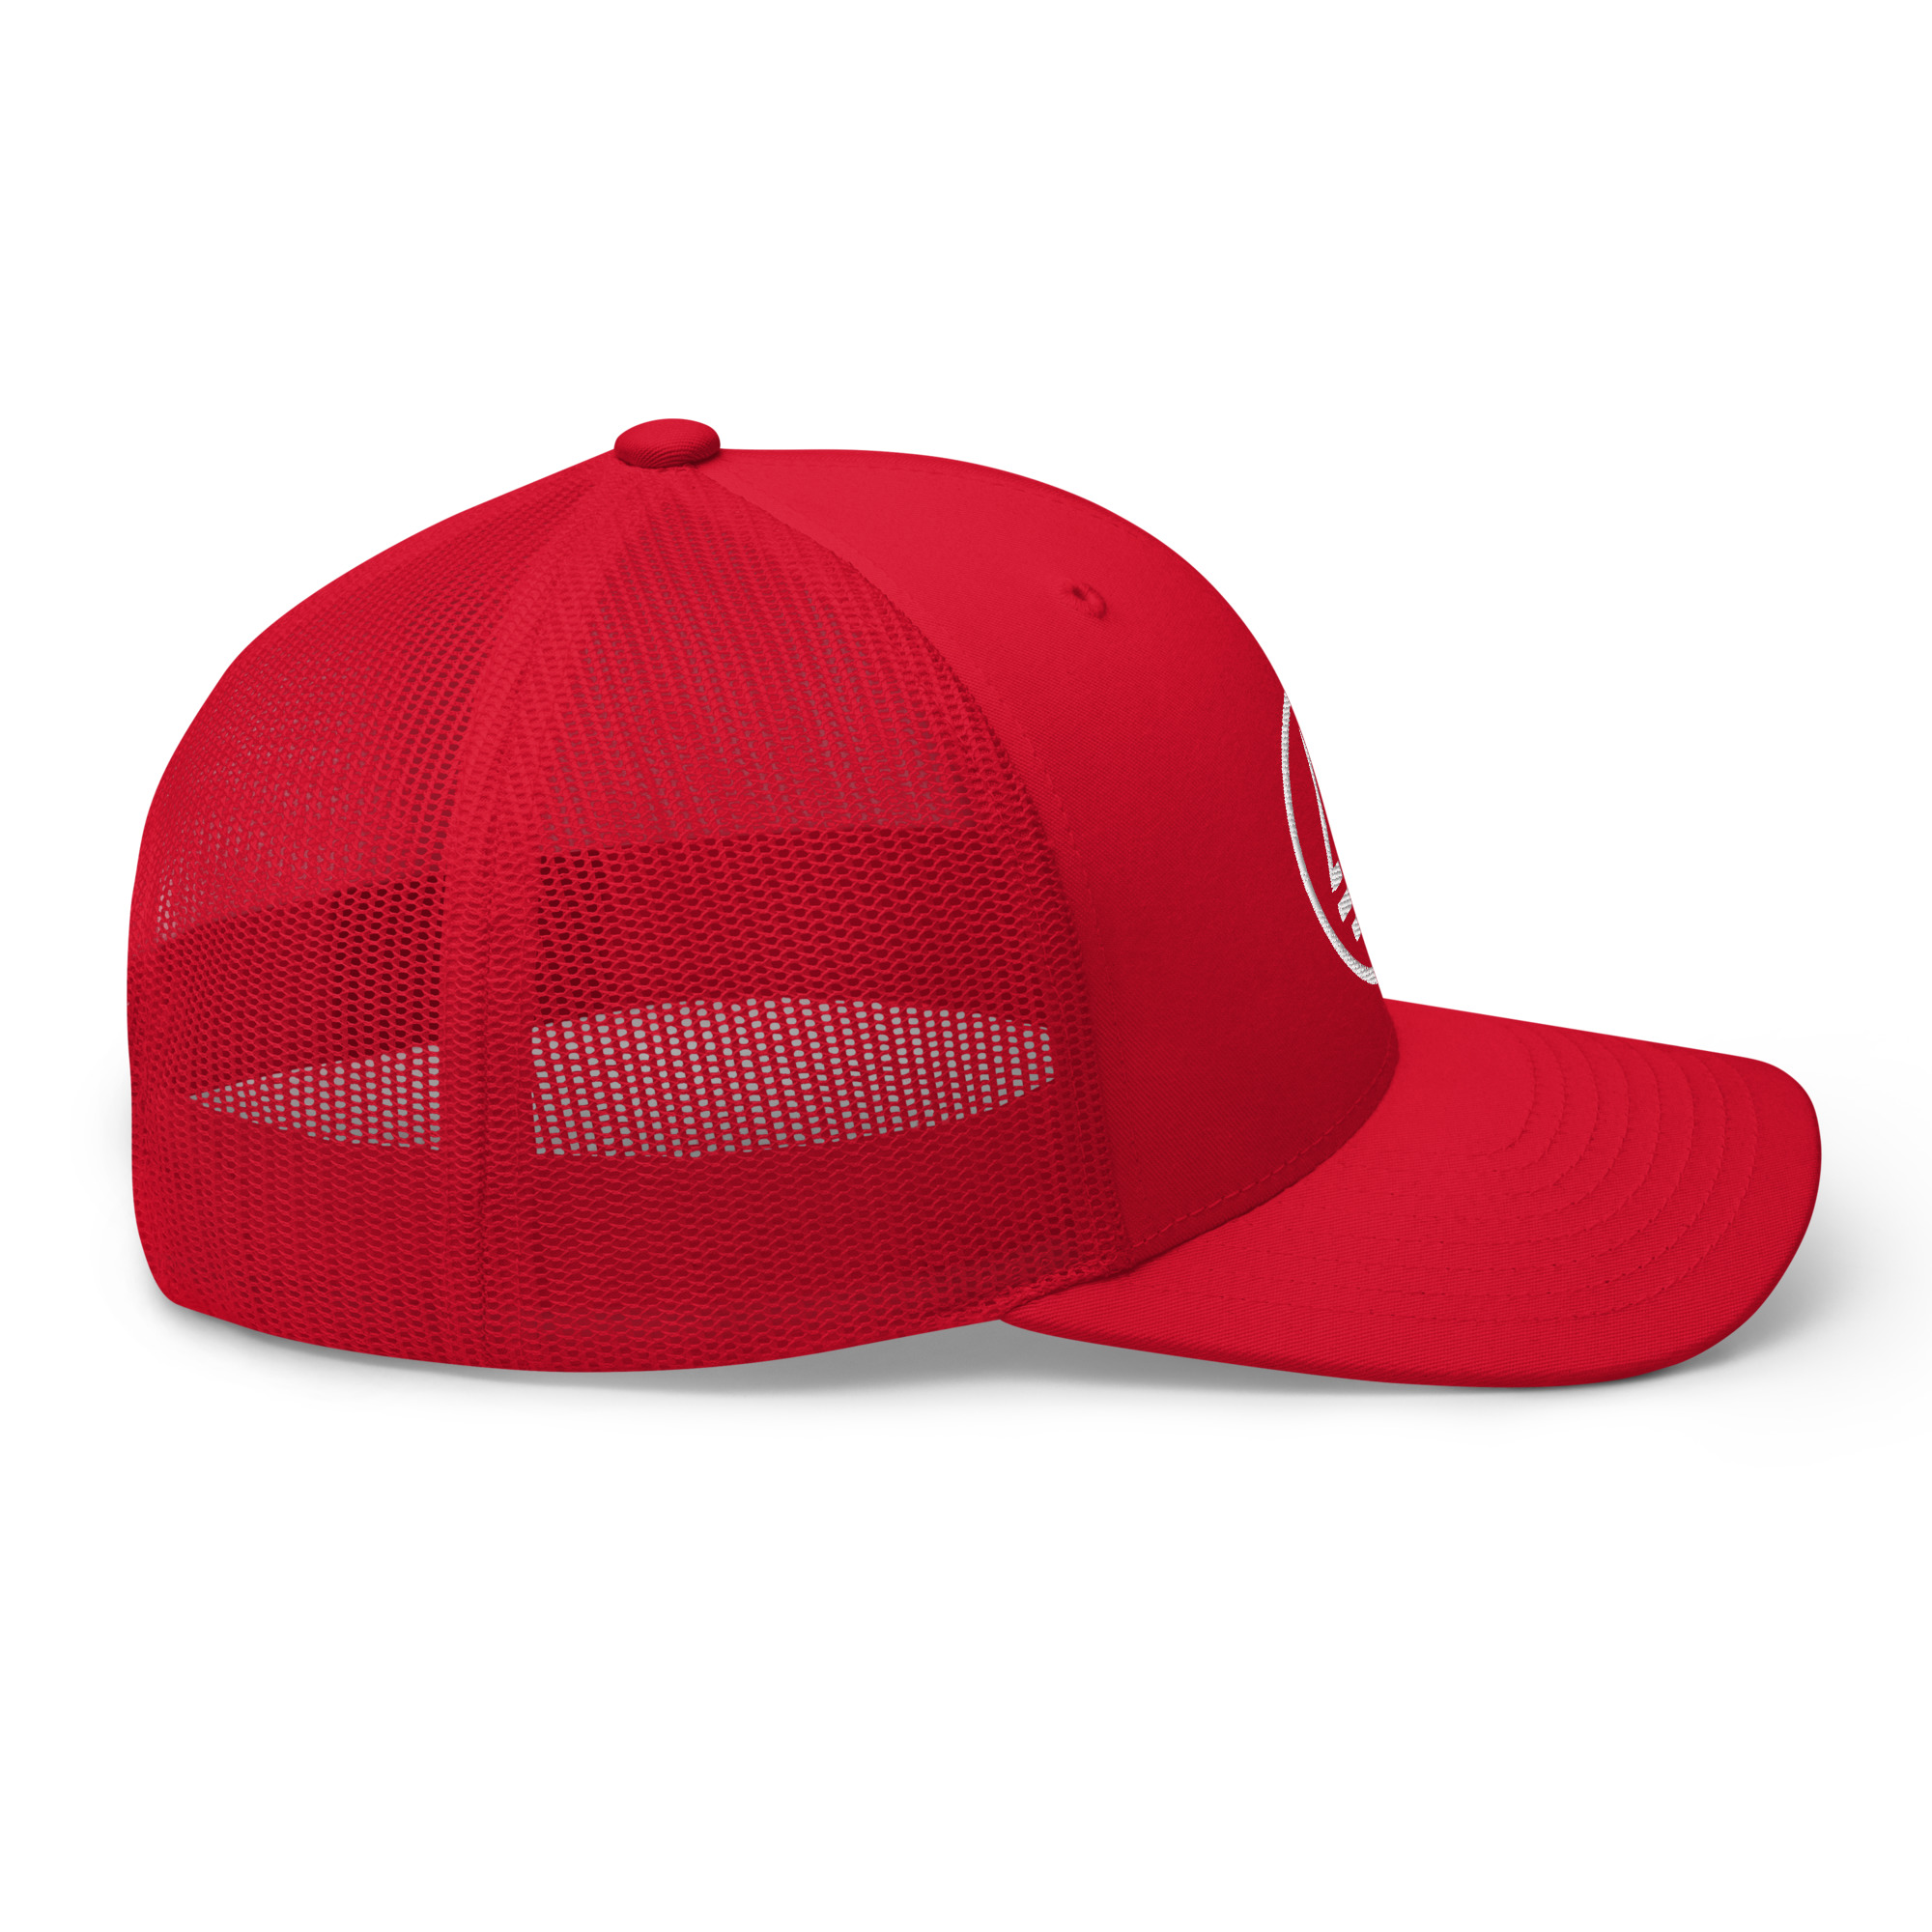 retro-trucker-hat-red-right-64ca3d310478c.jpg